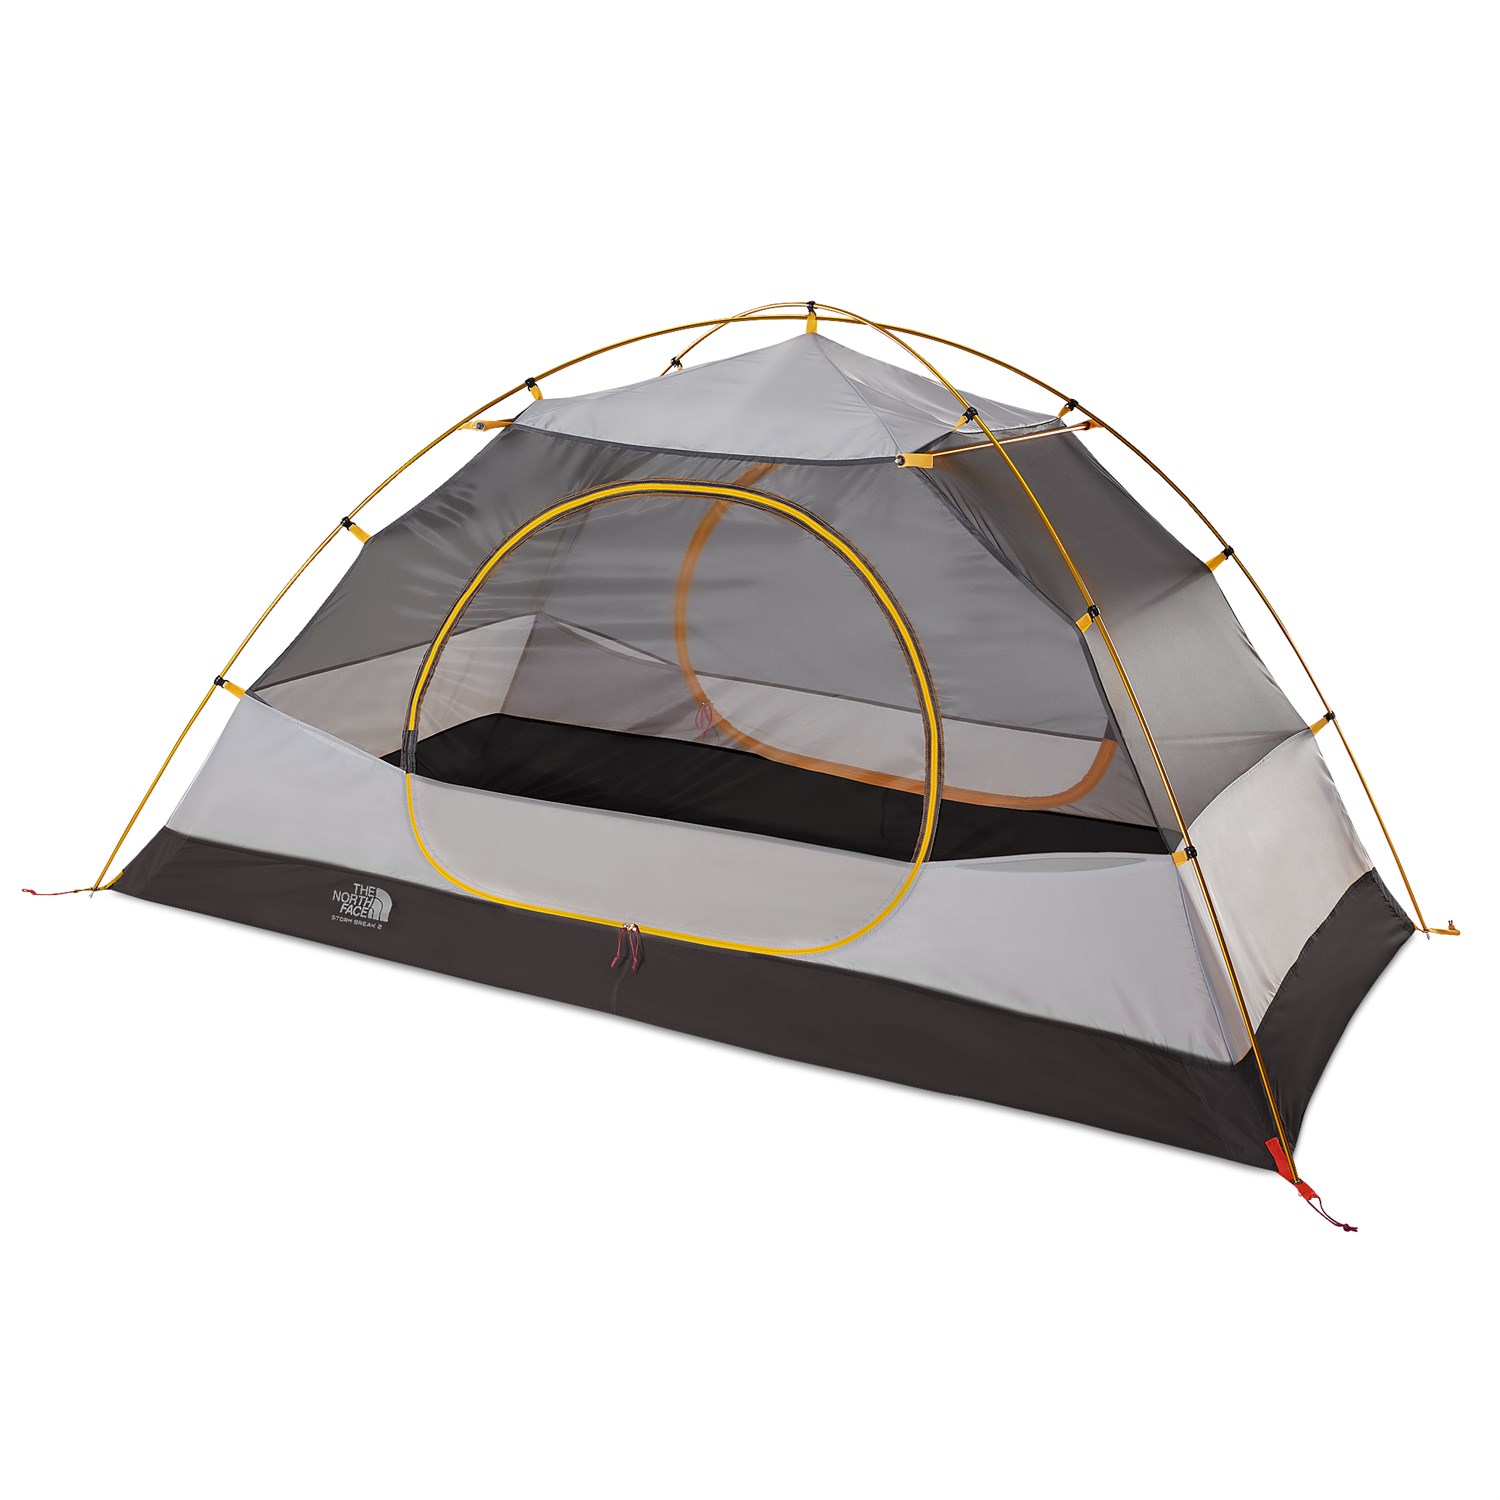 north face stormbreak 2 tent review